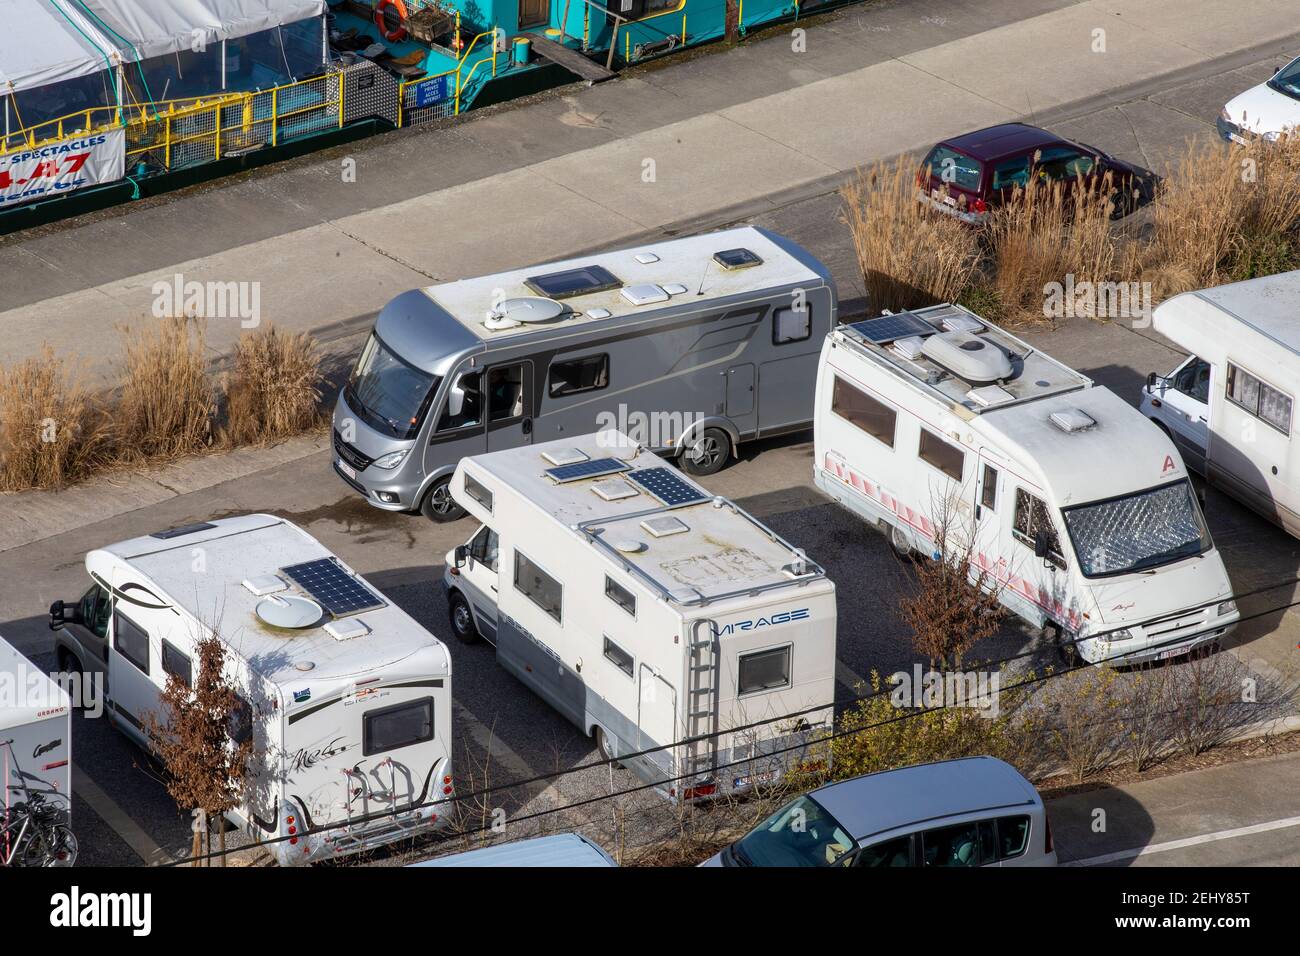 L'illustration montre les camping-cars photographiés par temps ensoleillé dans le centre de Floreffe, le samedi 20 février 2021. 17 degrés sont e Banque D'Images